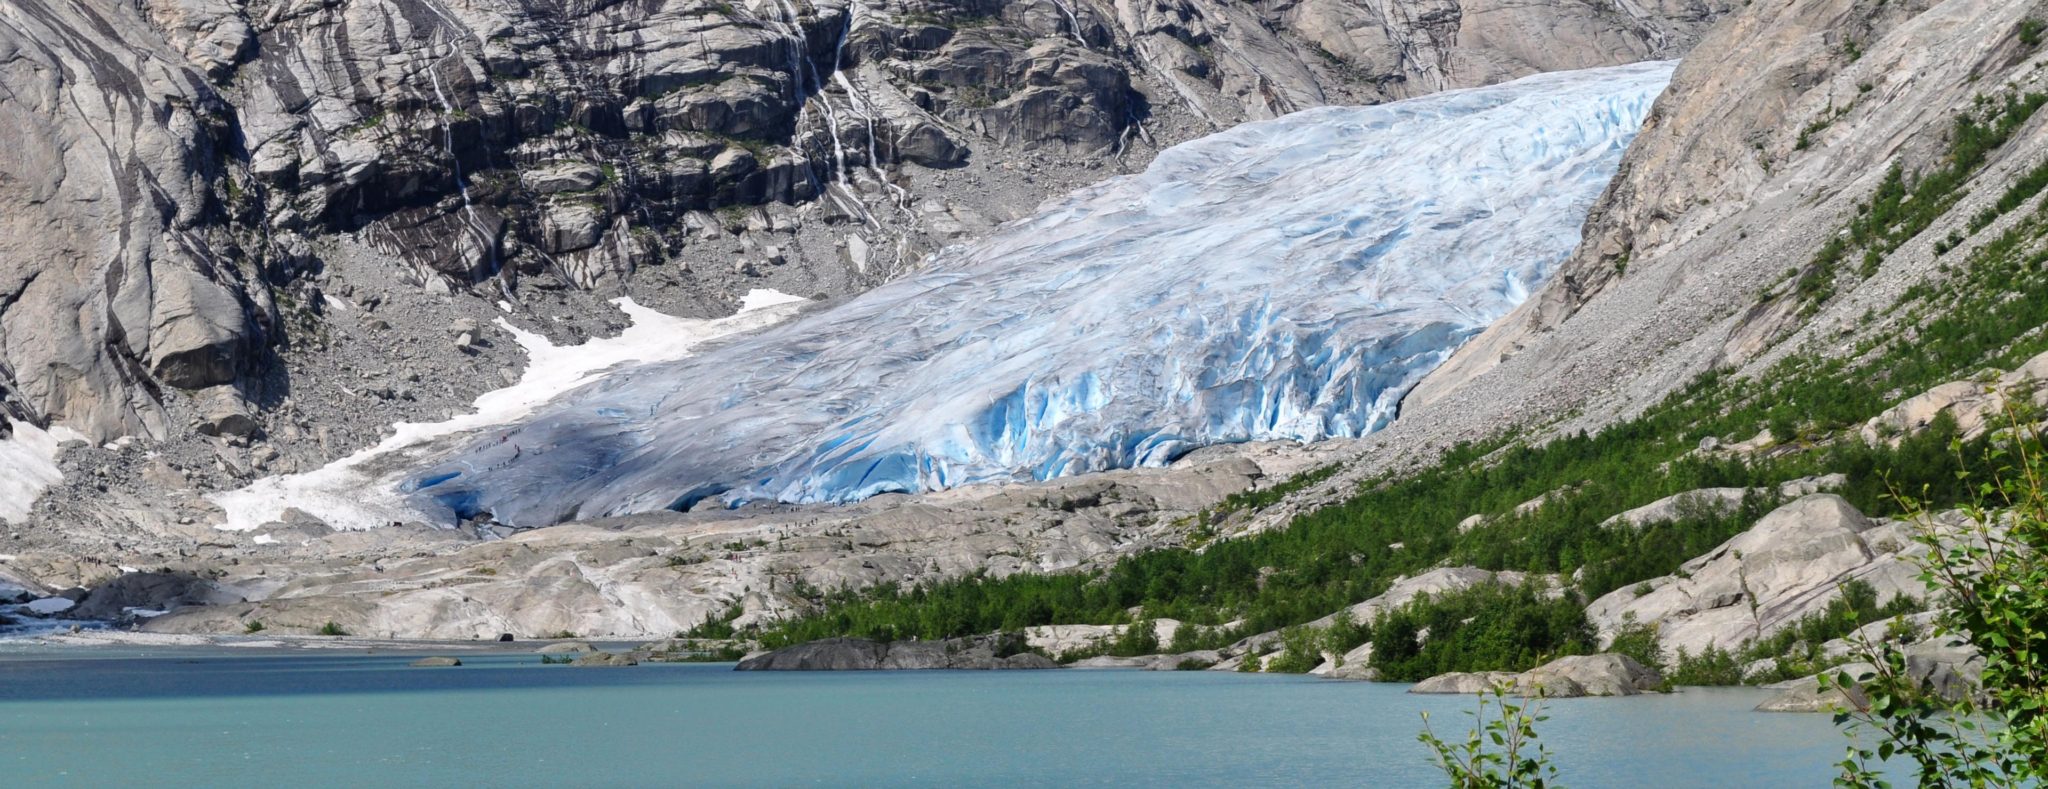 De 7 grootste Gletsjers van Noorwegen